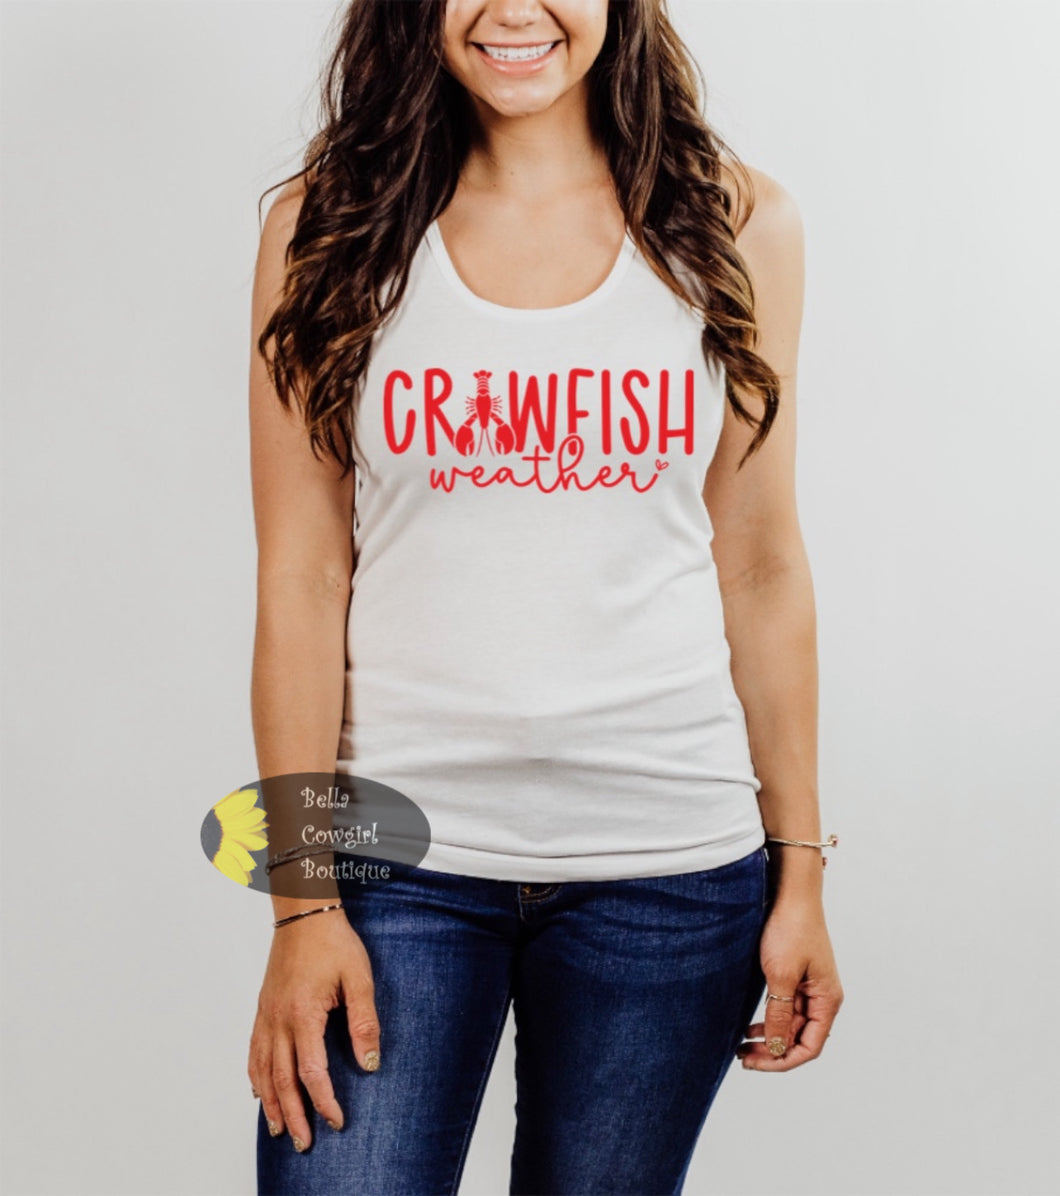 Crawfish Weather Crawfish Boil Cajun Women's Tank Top